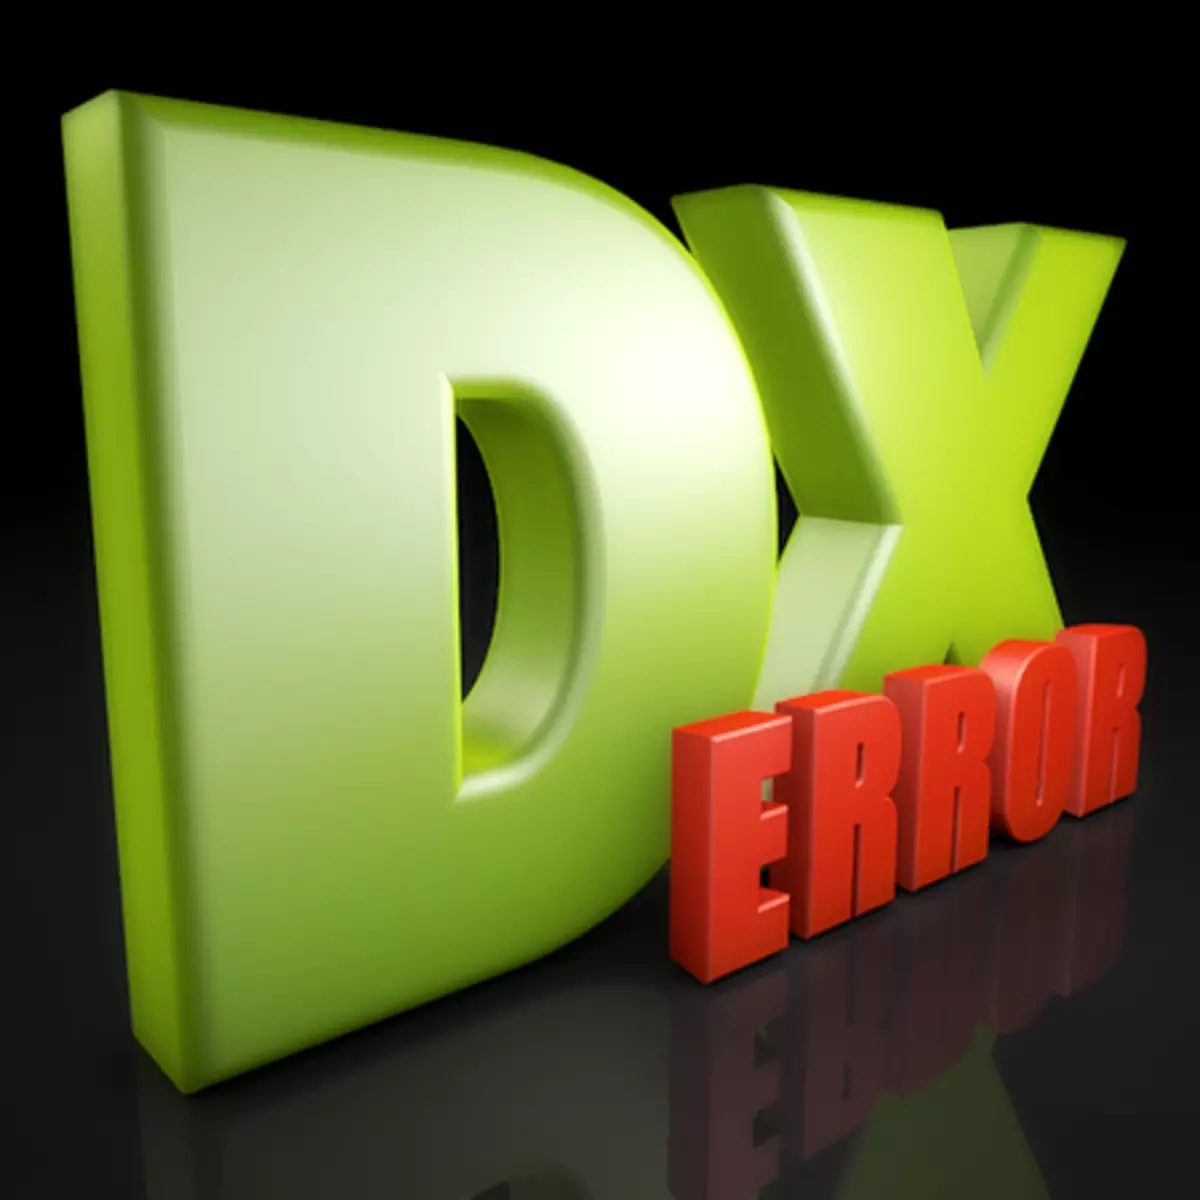 Chyba nastavenia DirectX sa vyskytla interná chyba